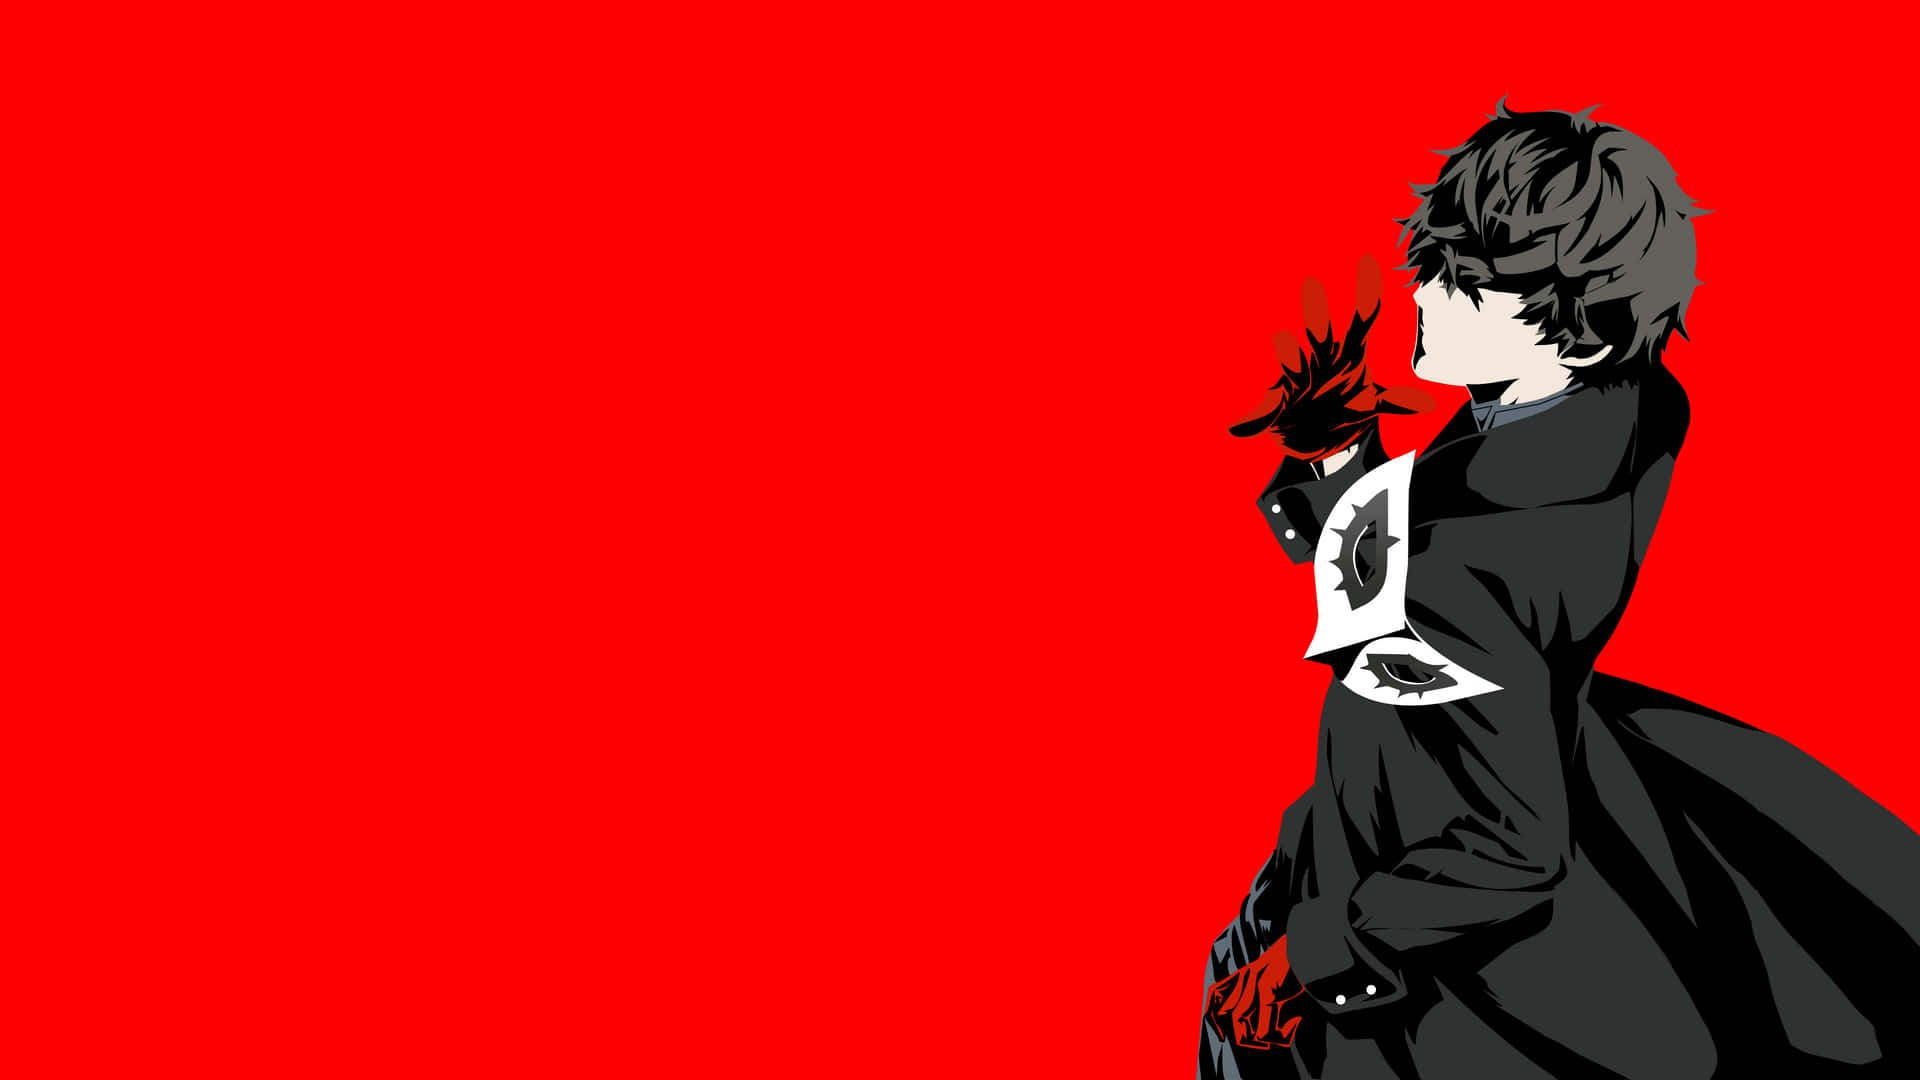 Joker Persona 5 Red Aesthetic Wallpaper